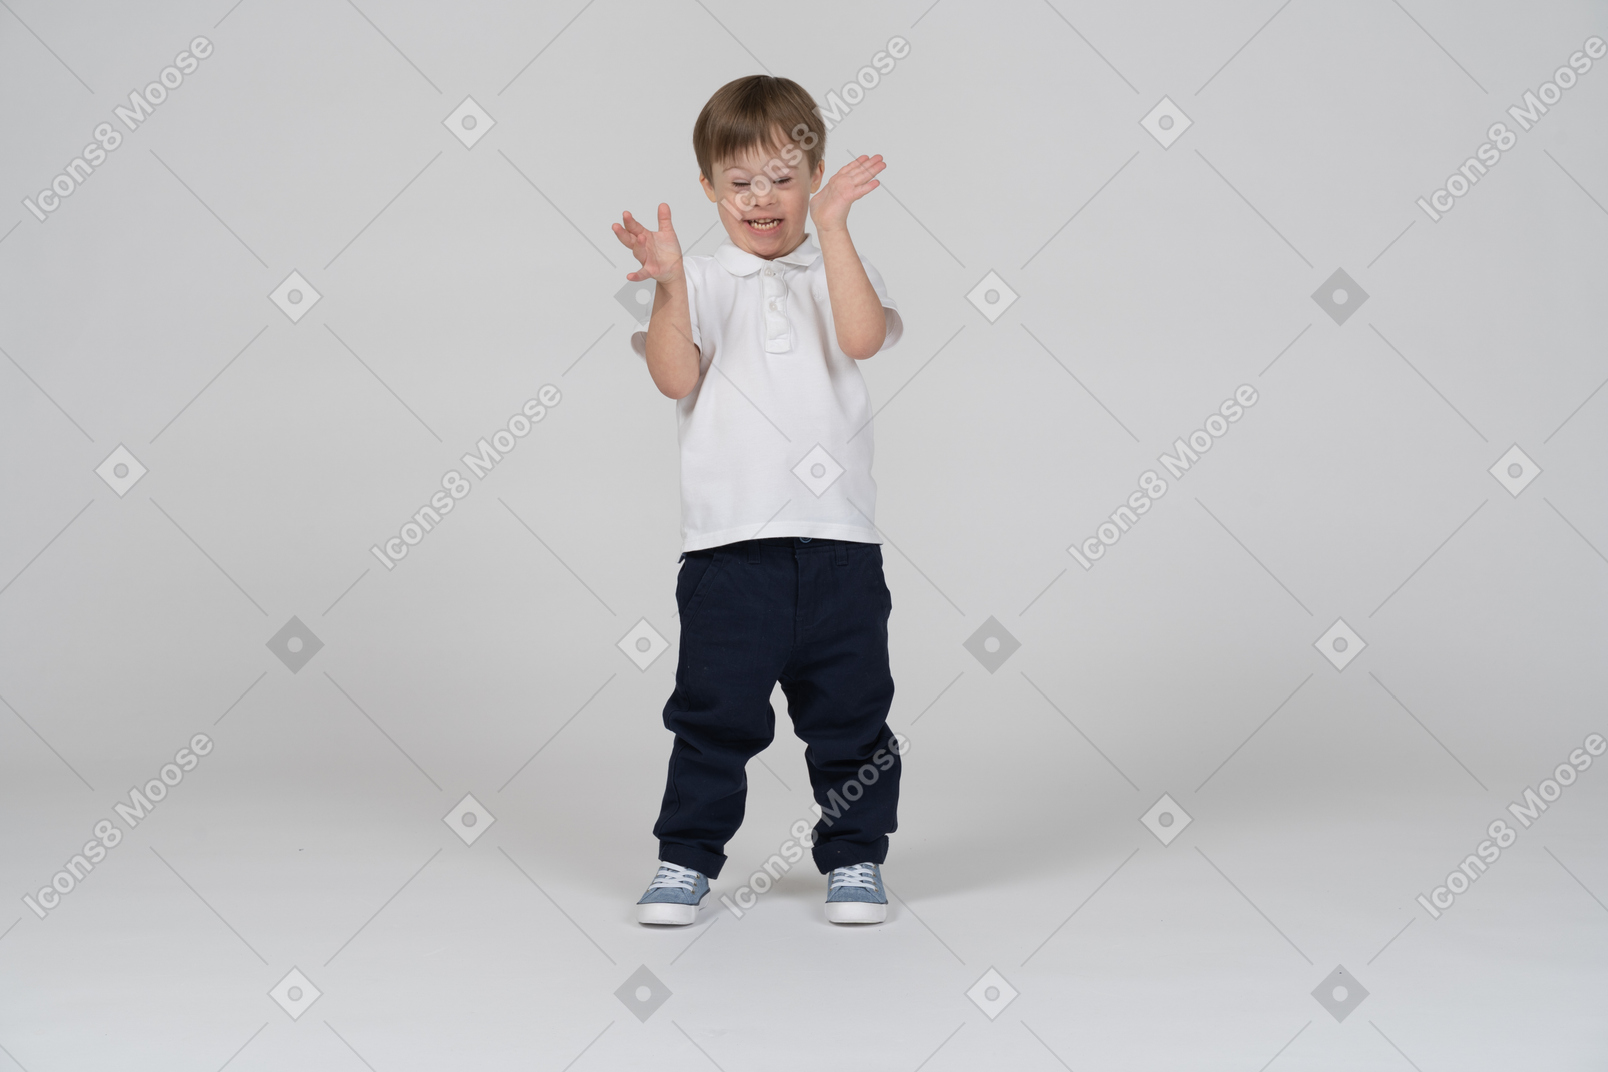 Вид спереди мальчика, улыбающегося и взволнованно жестикулирующего руками